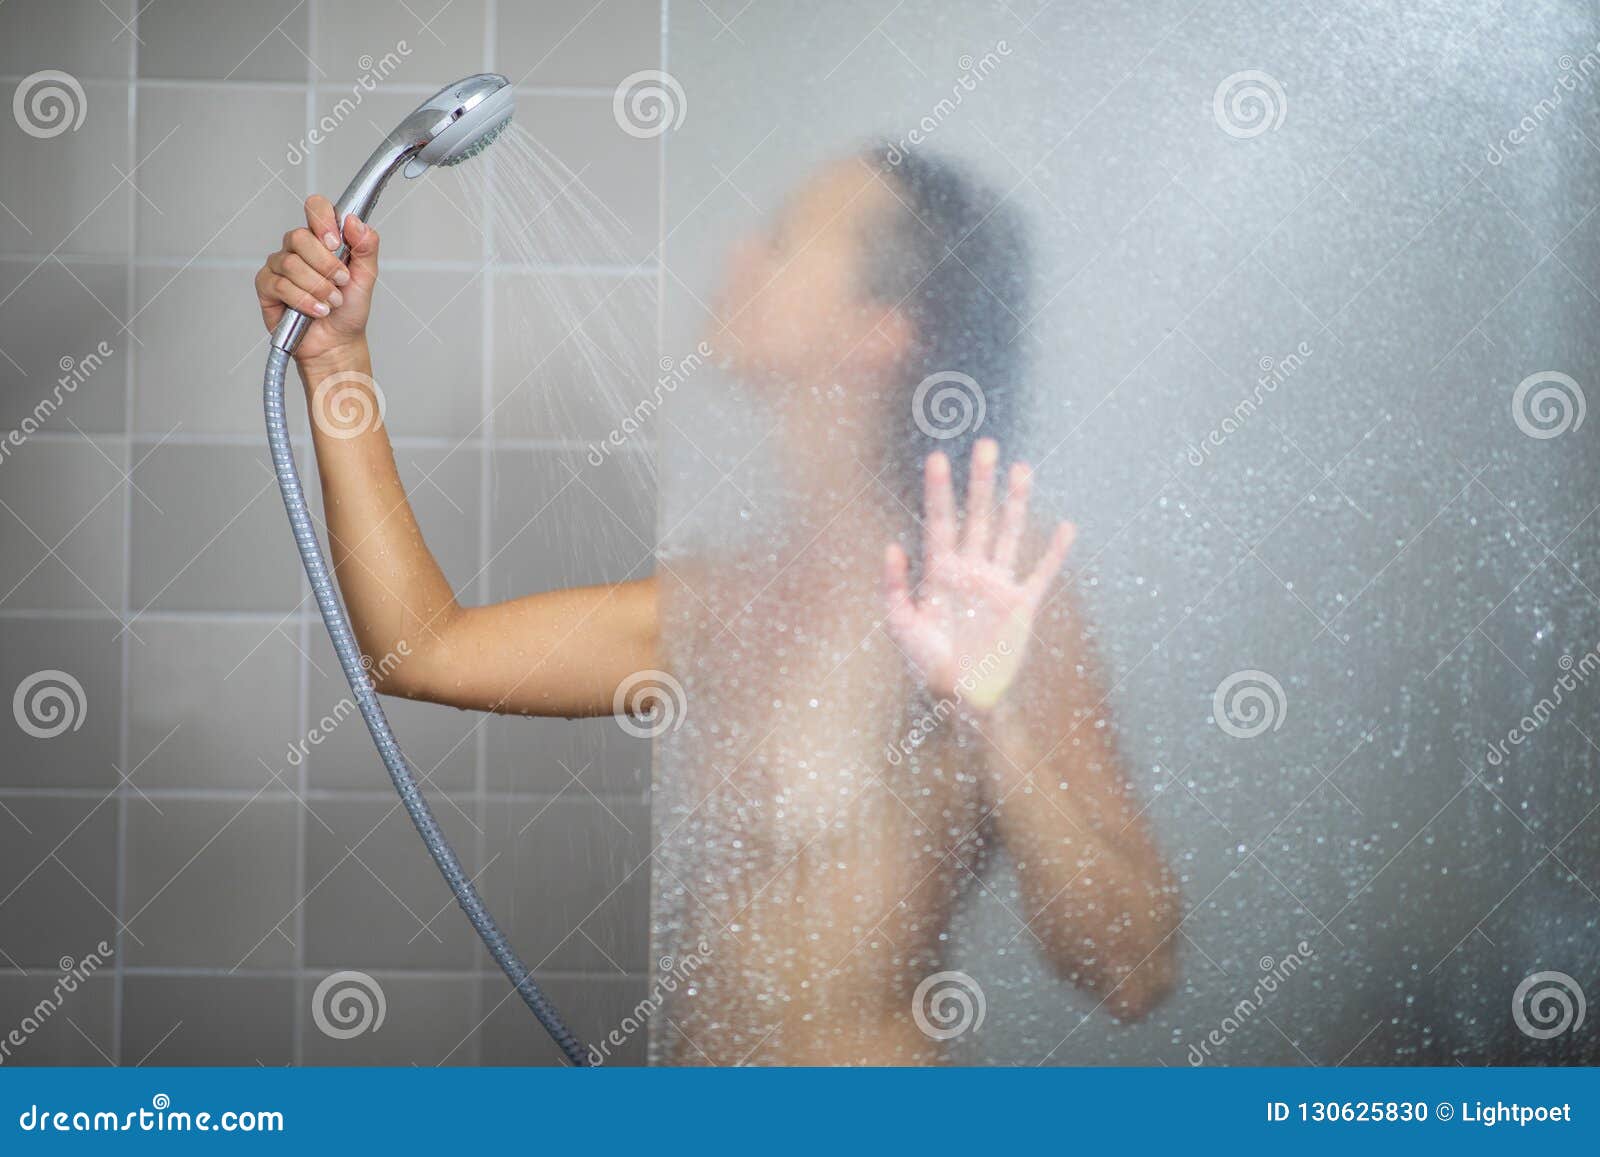 Best of Wife in shower